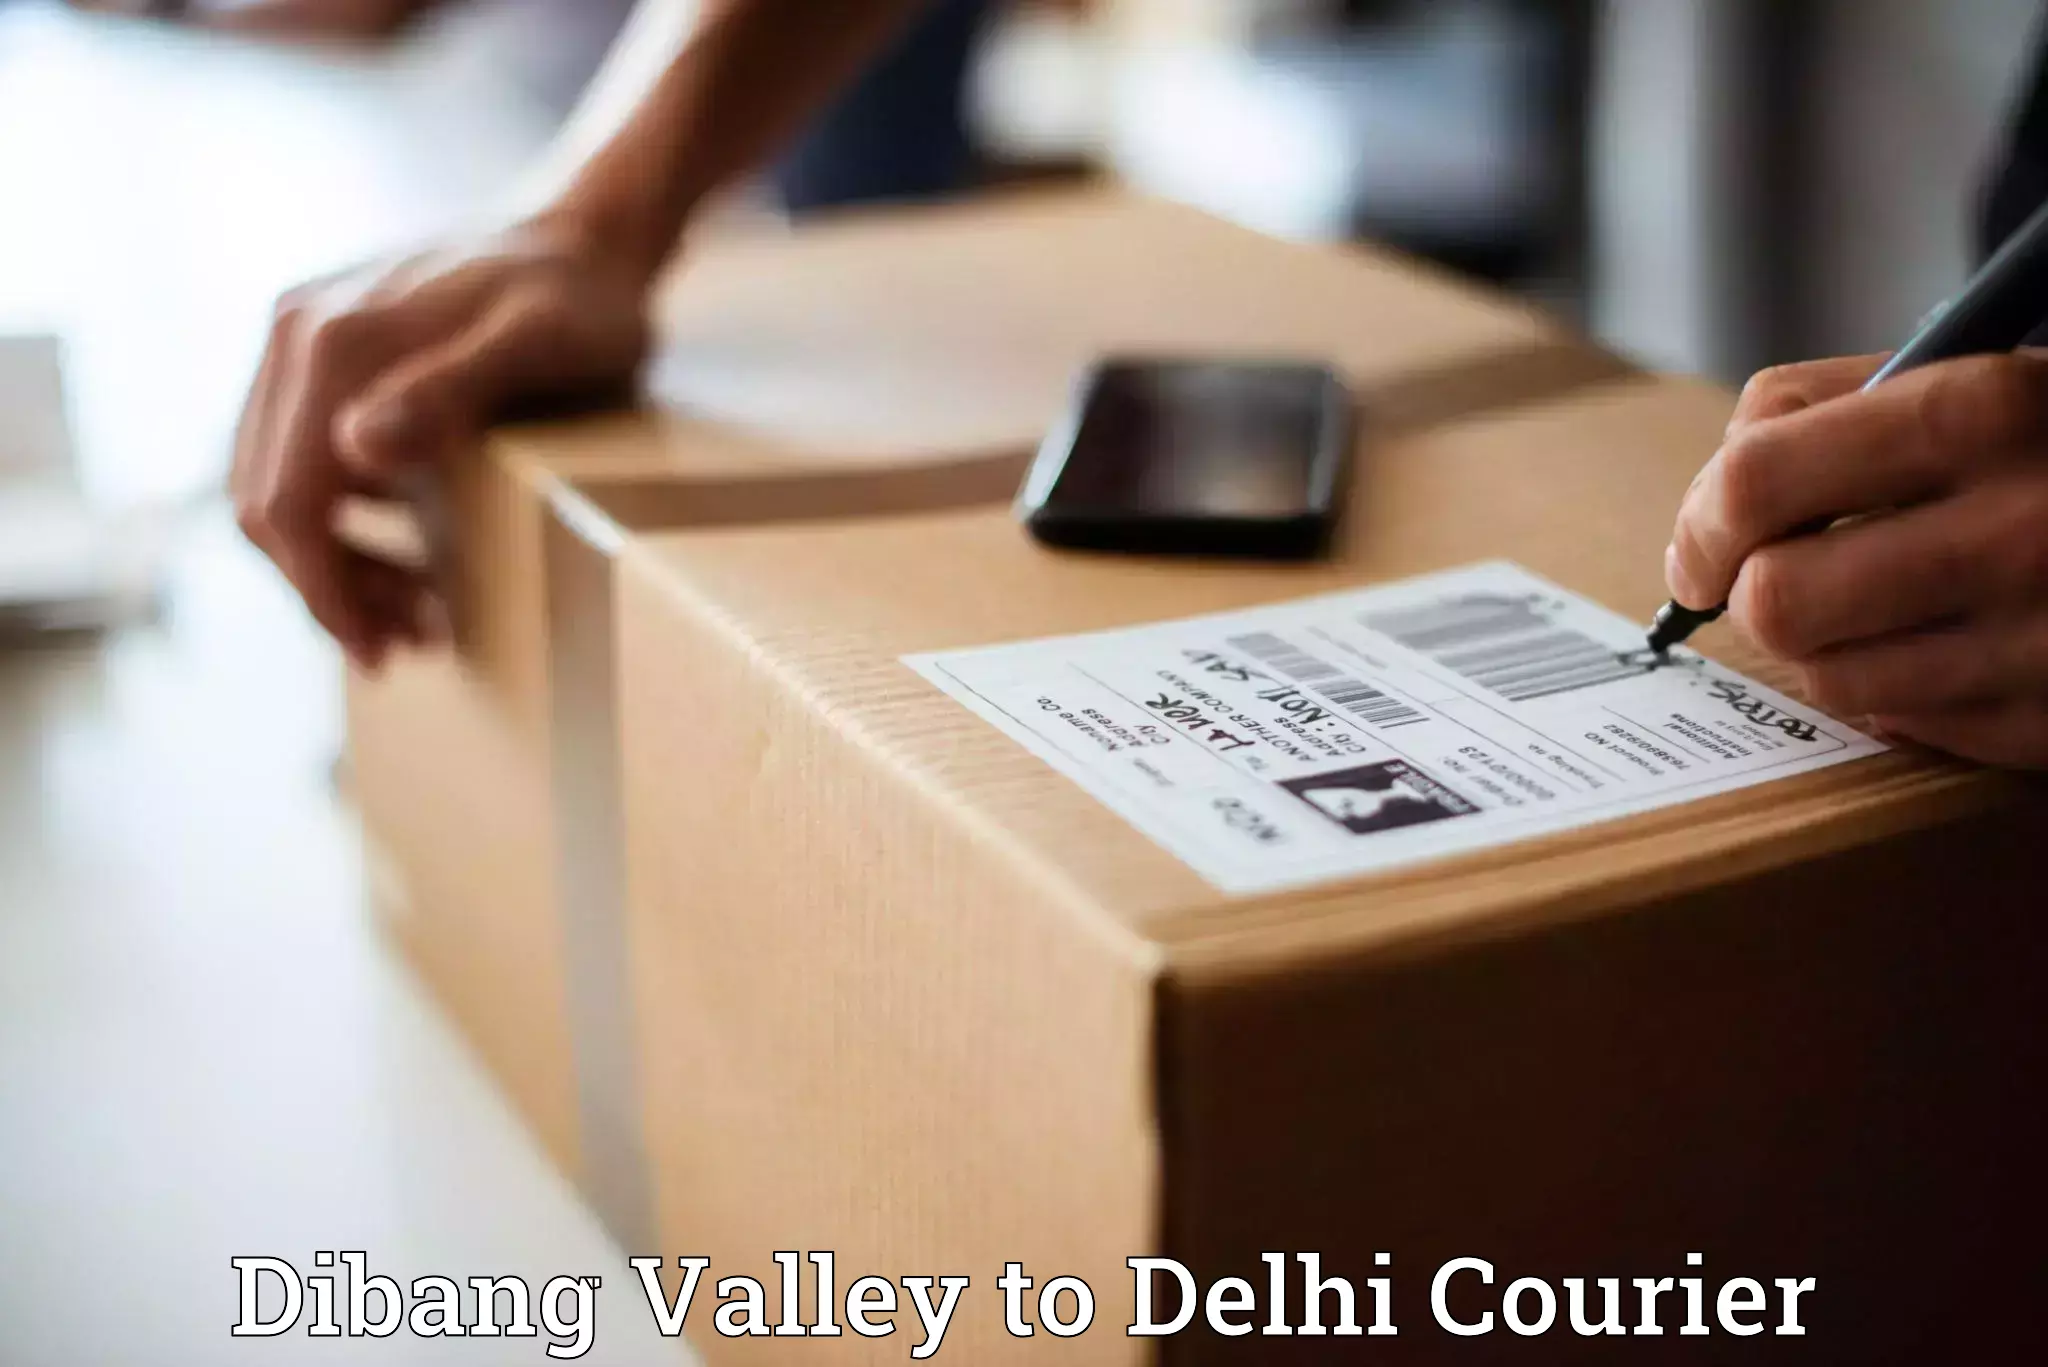 Express logistics providers Dibang Valley to Delhi